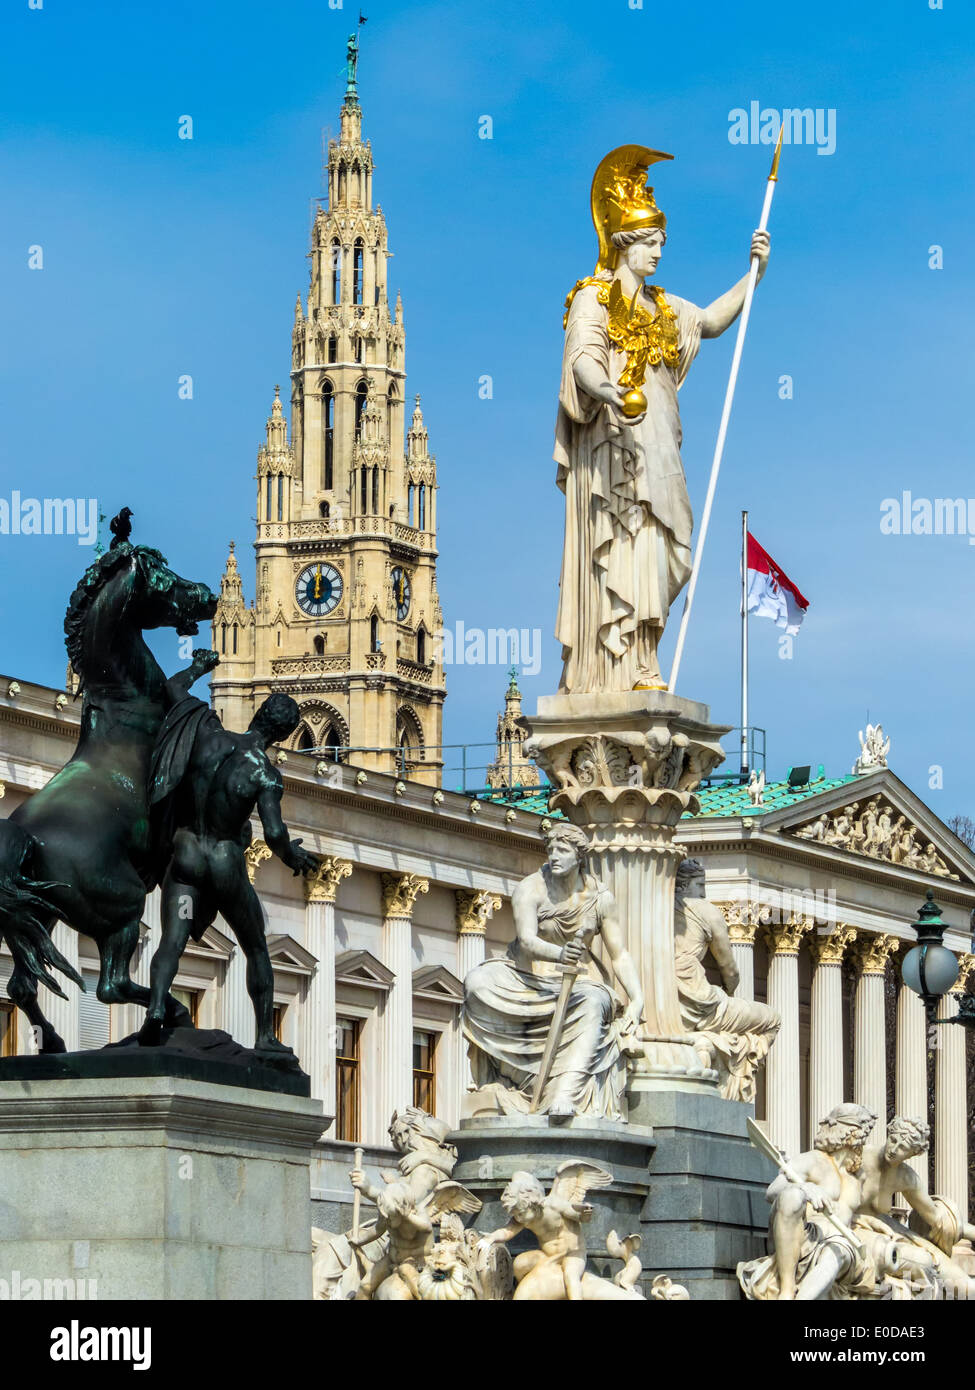 'El parlamento en Viena, ? Sterreich. Con la estatua de ''Pallas Athene'' de la diosa griega de la sabiduría.', 'Dcomo Parlament i Foto de stock